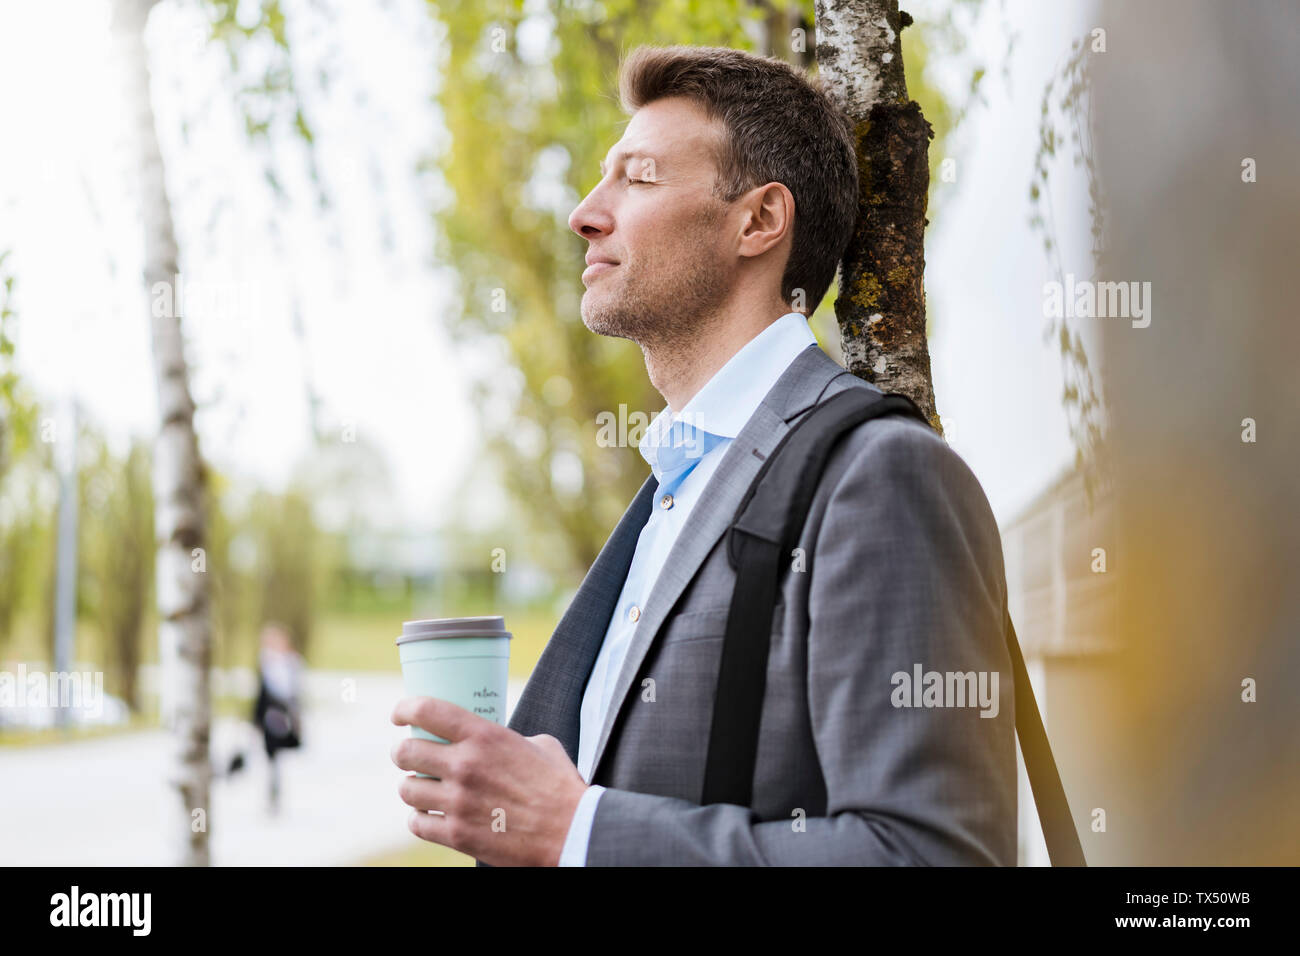 Entspannt Geschäftsmann mit Takeaway Kaffee in einem Park Stockfoto